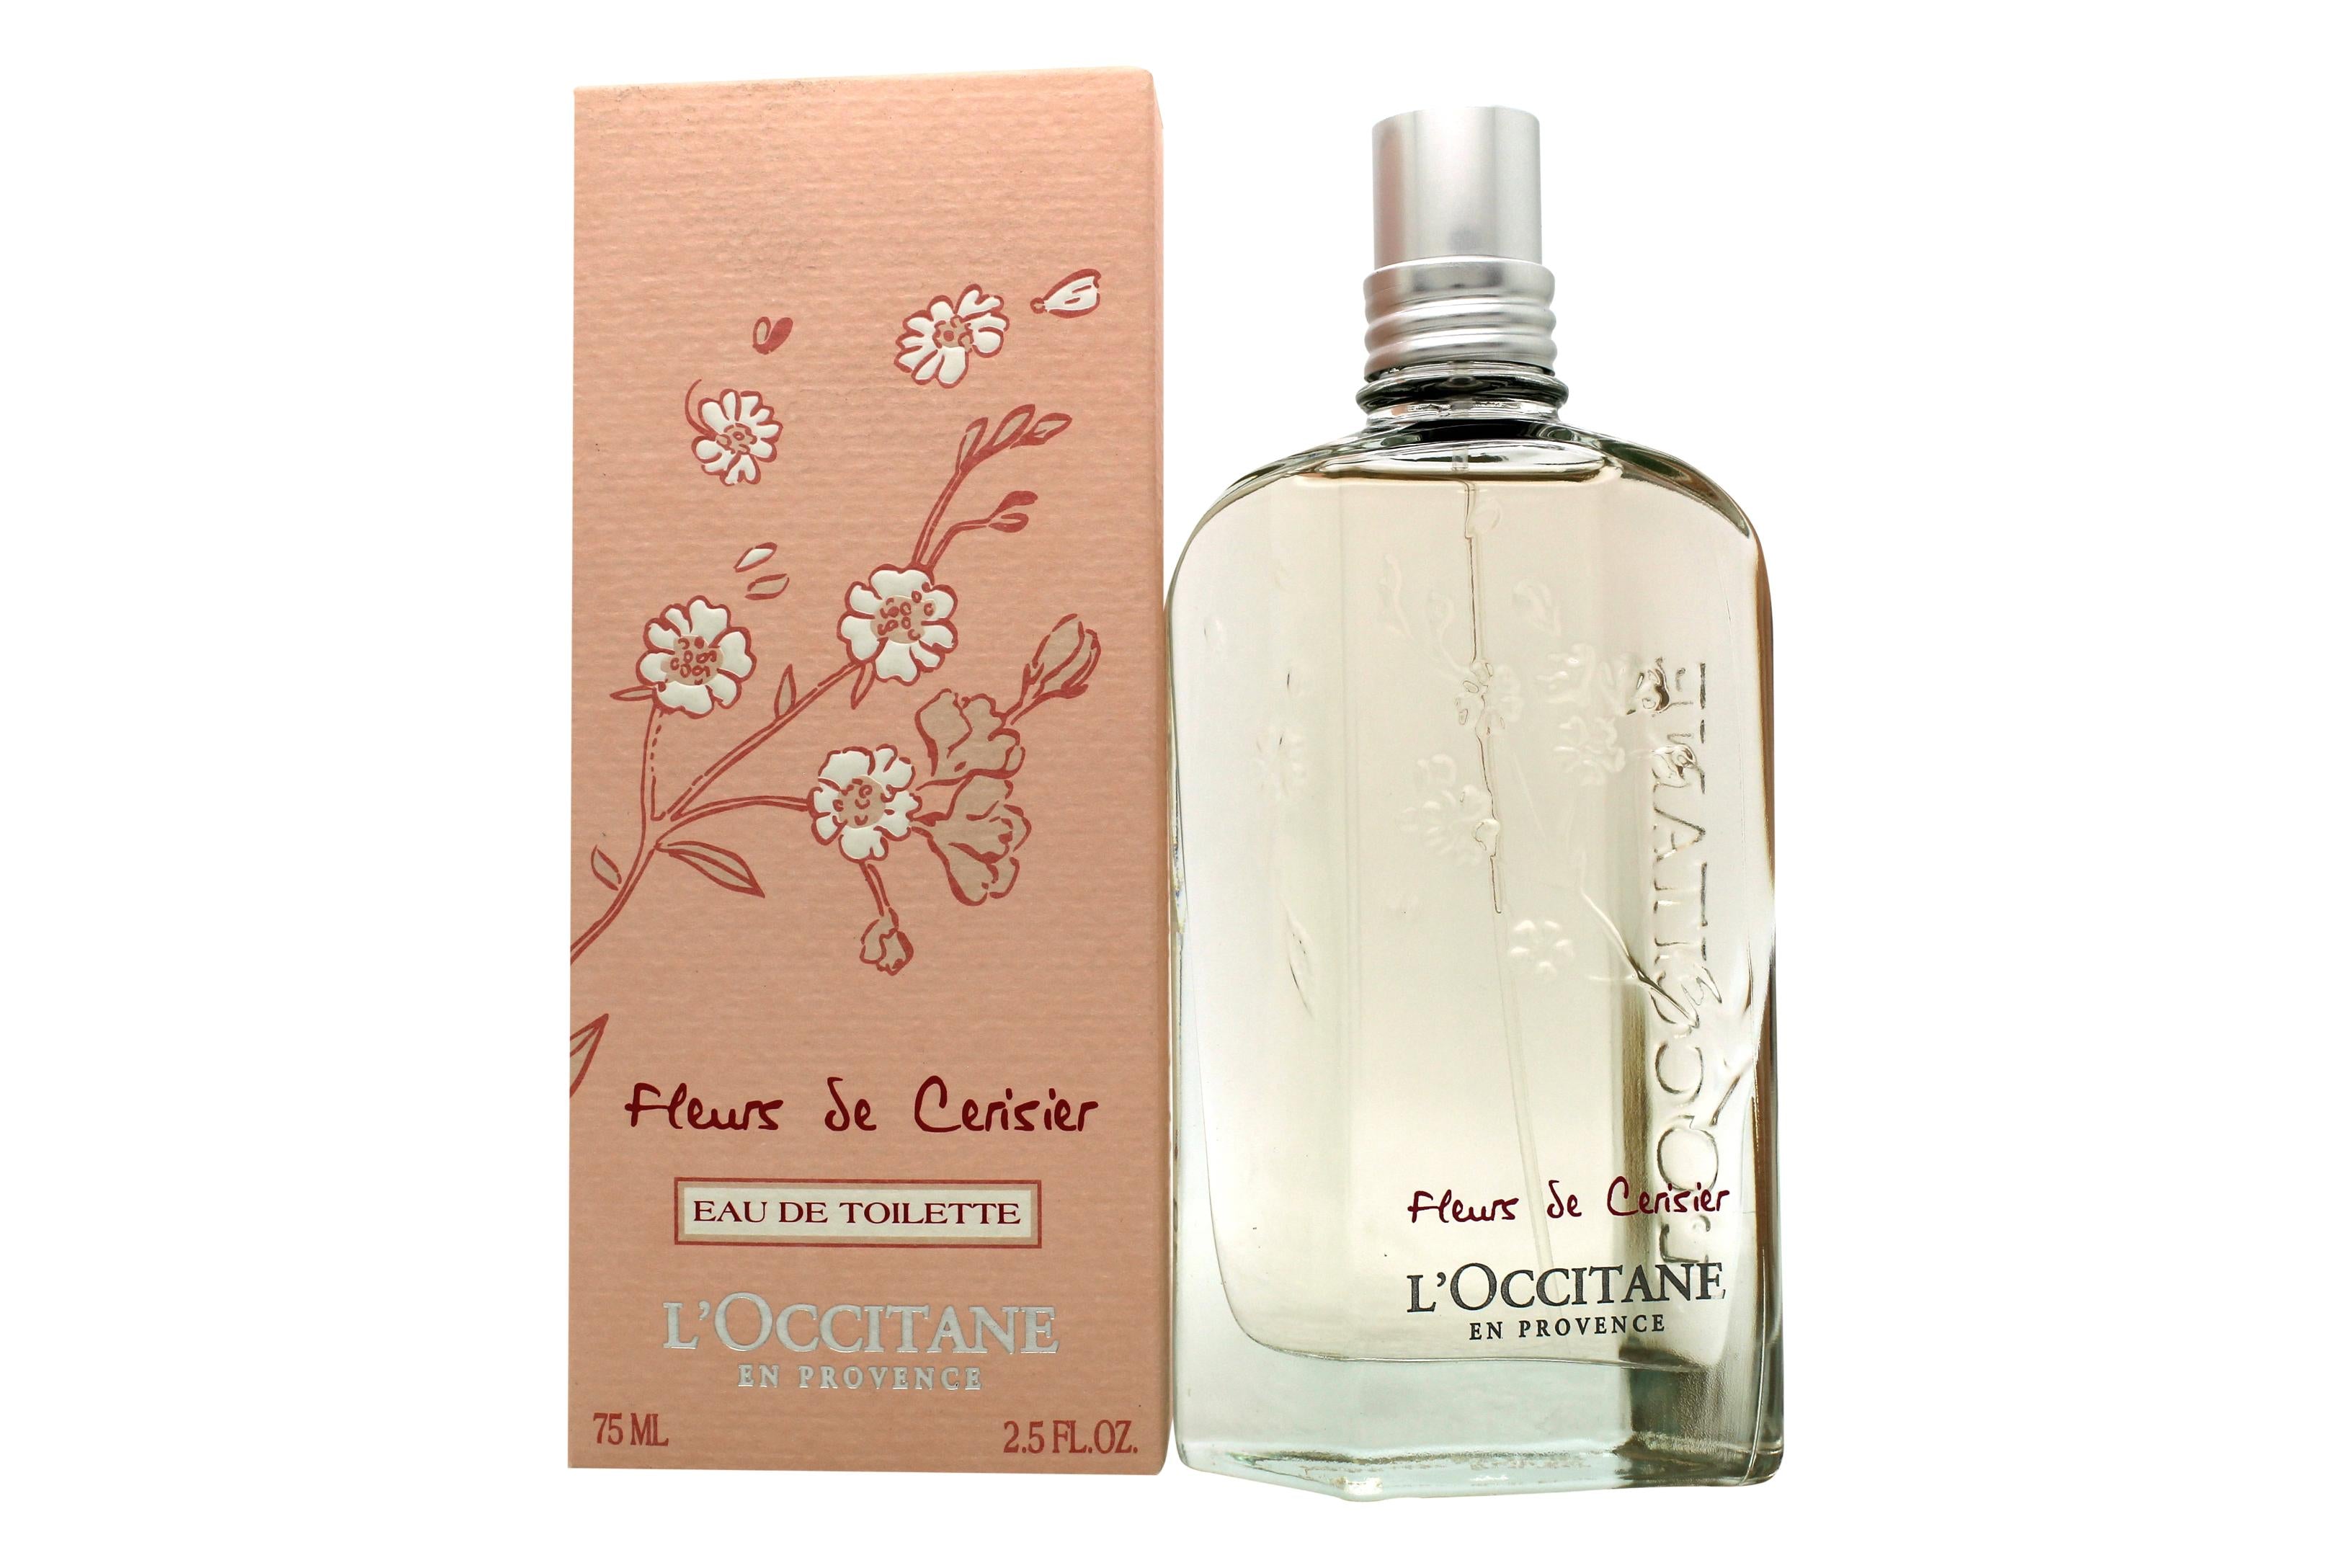 View LOccitane Fleurs de Cerisier Cherry Blossom Eau De Toilette 75ml Spray information